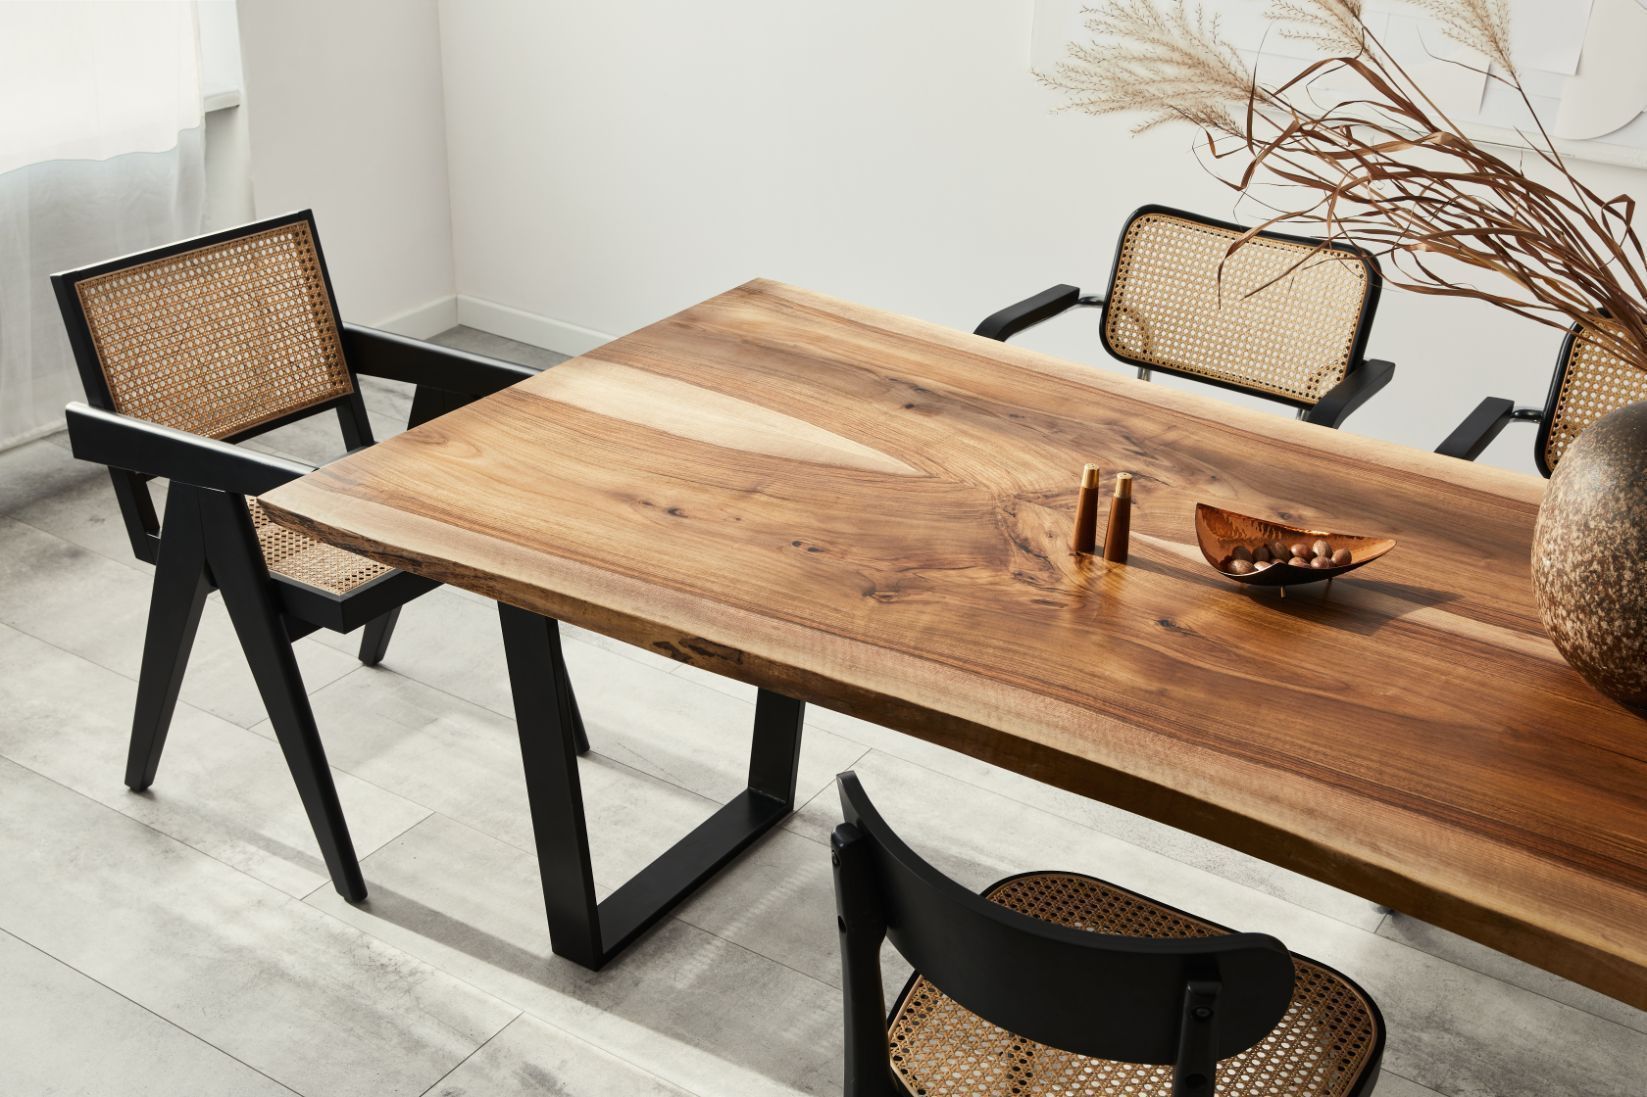 Bàn ghế chân sắt gỗ đẹp cho nhà hàng, văn phòng vô cùng tinh tế